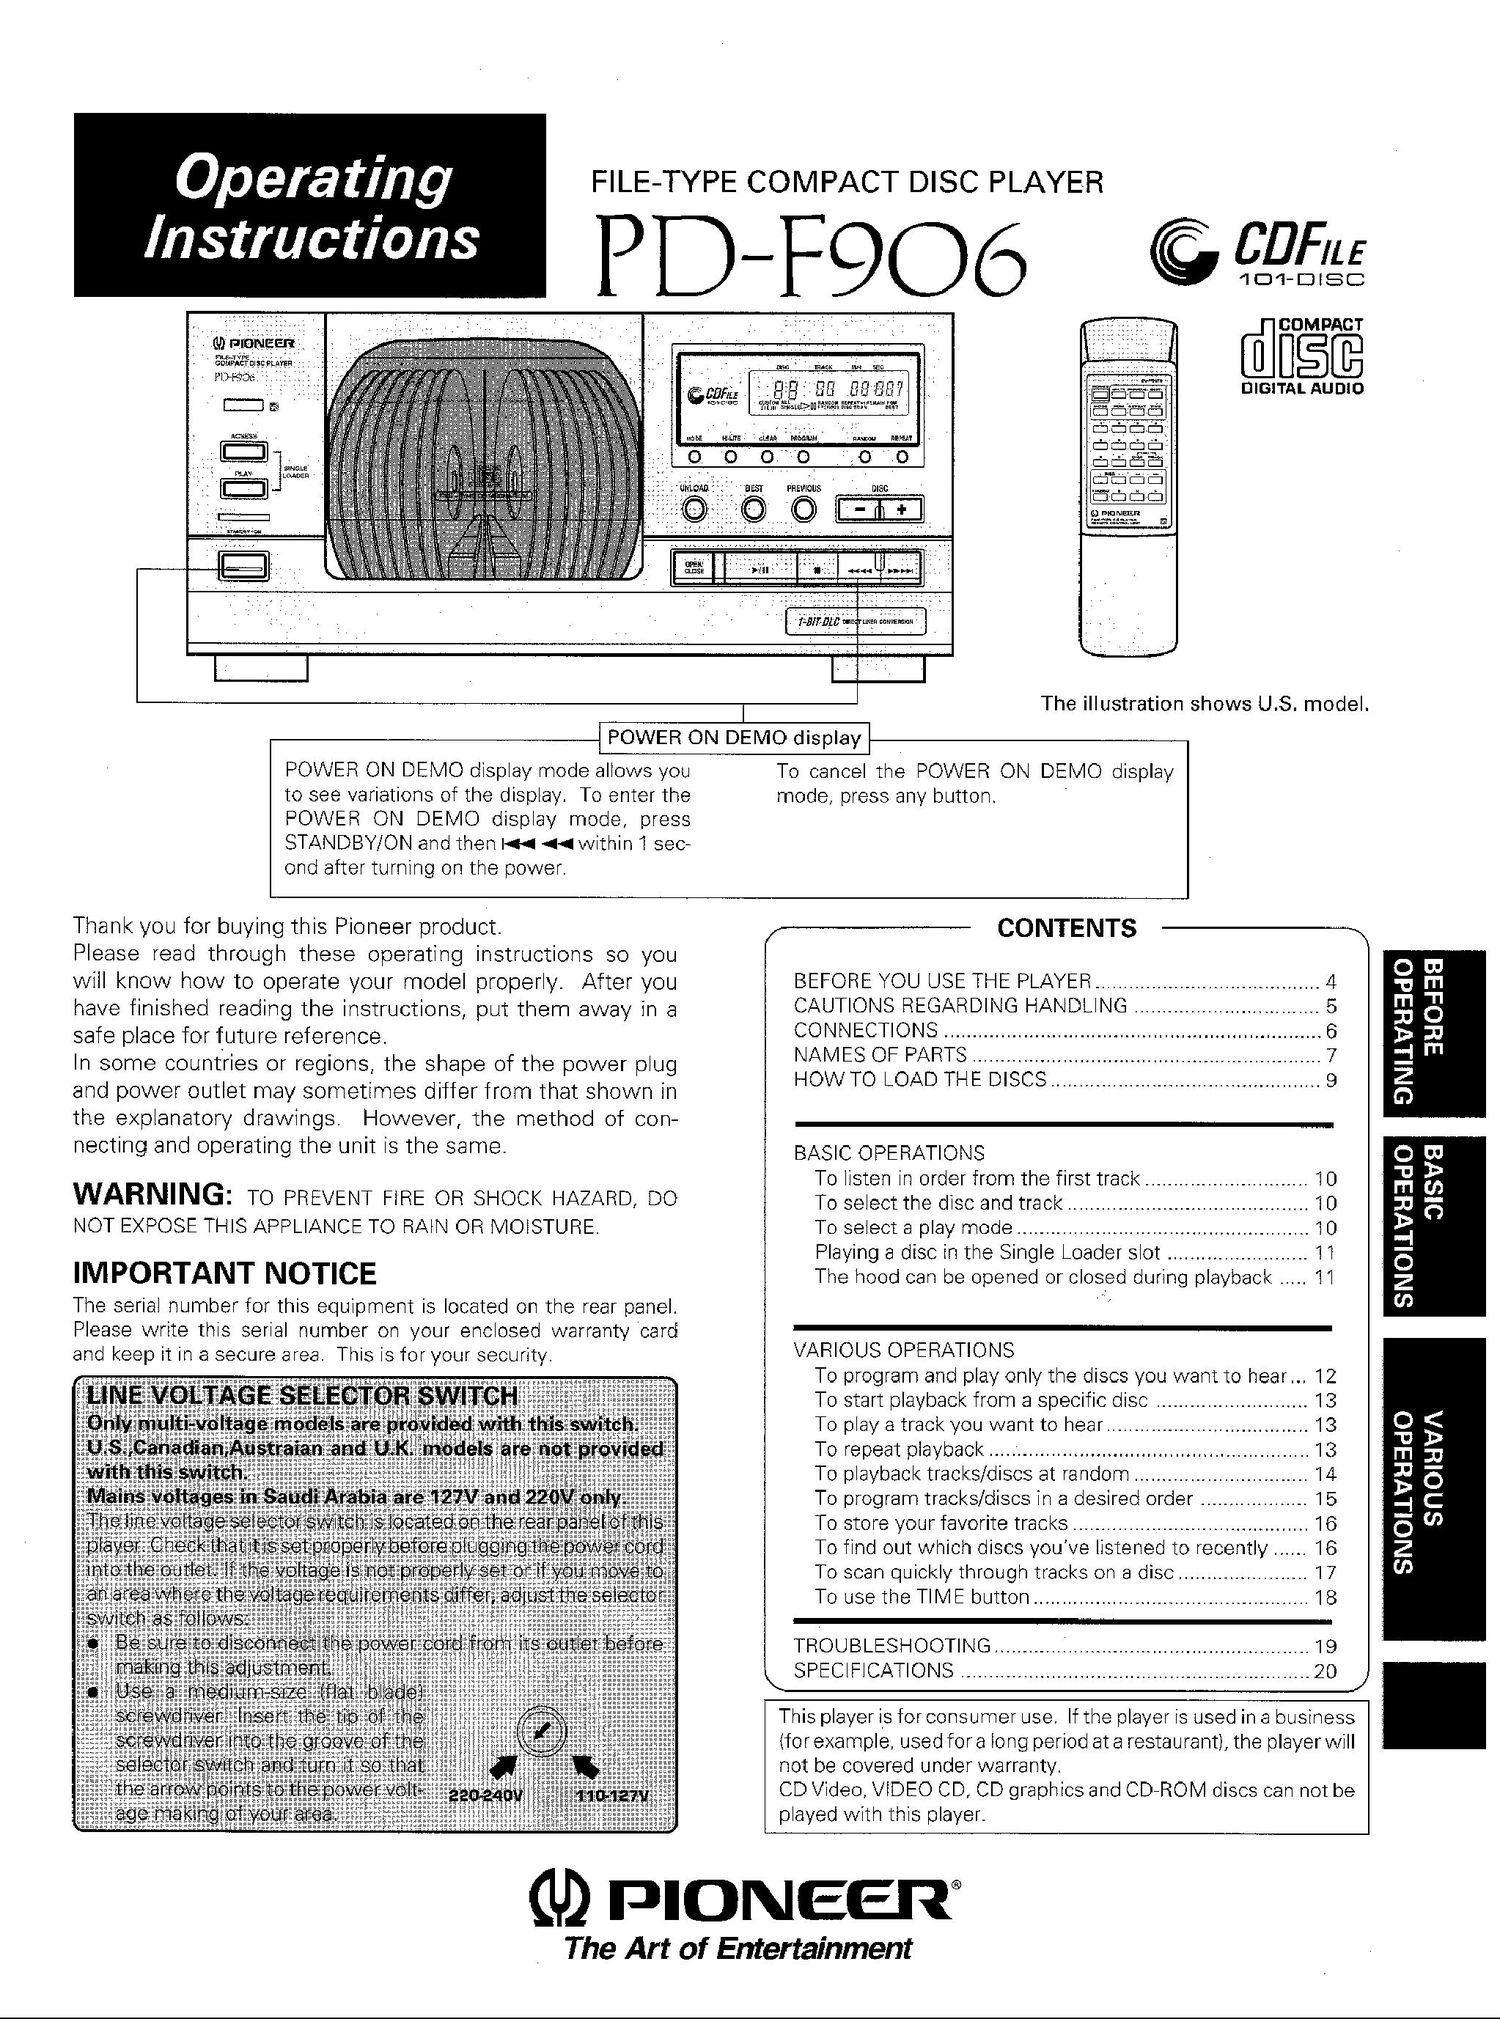 pioneer pdf 906 owners manual